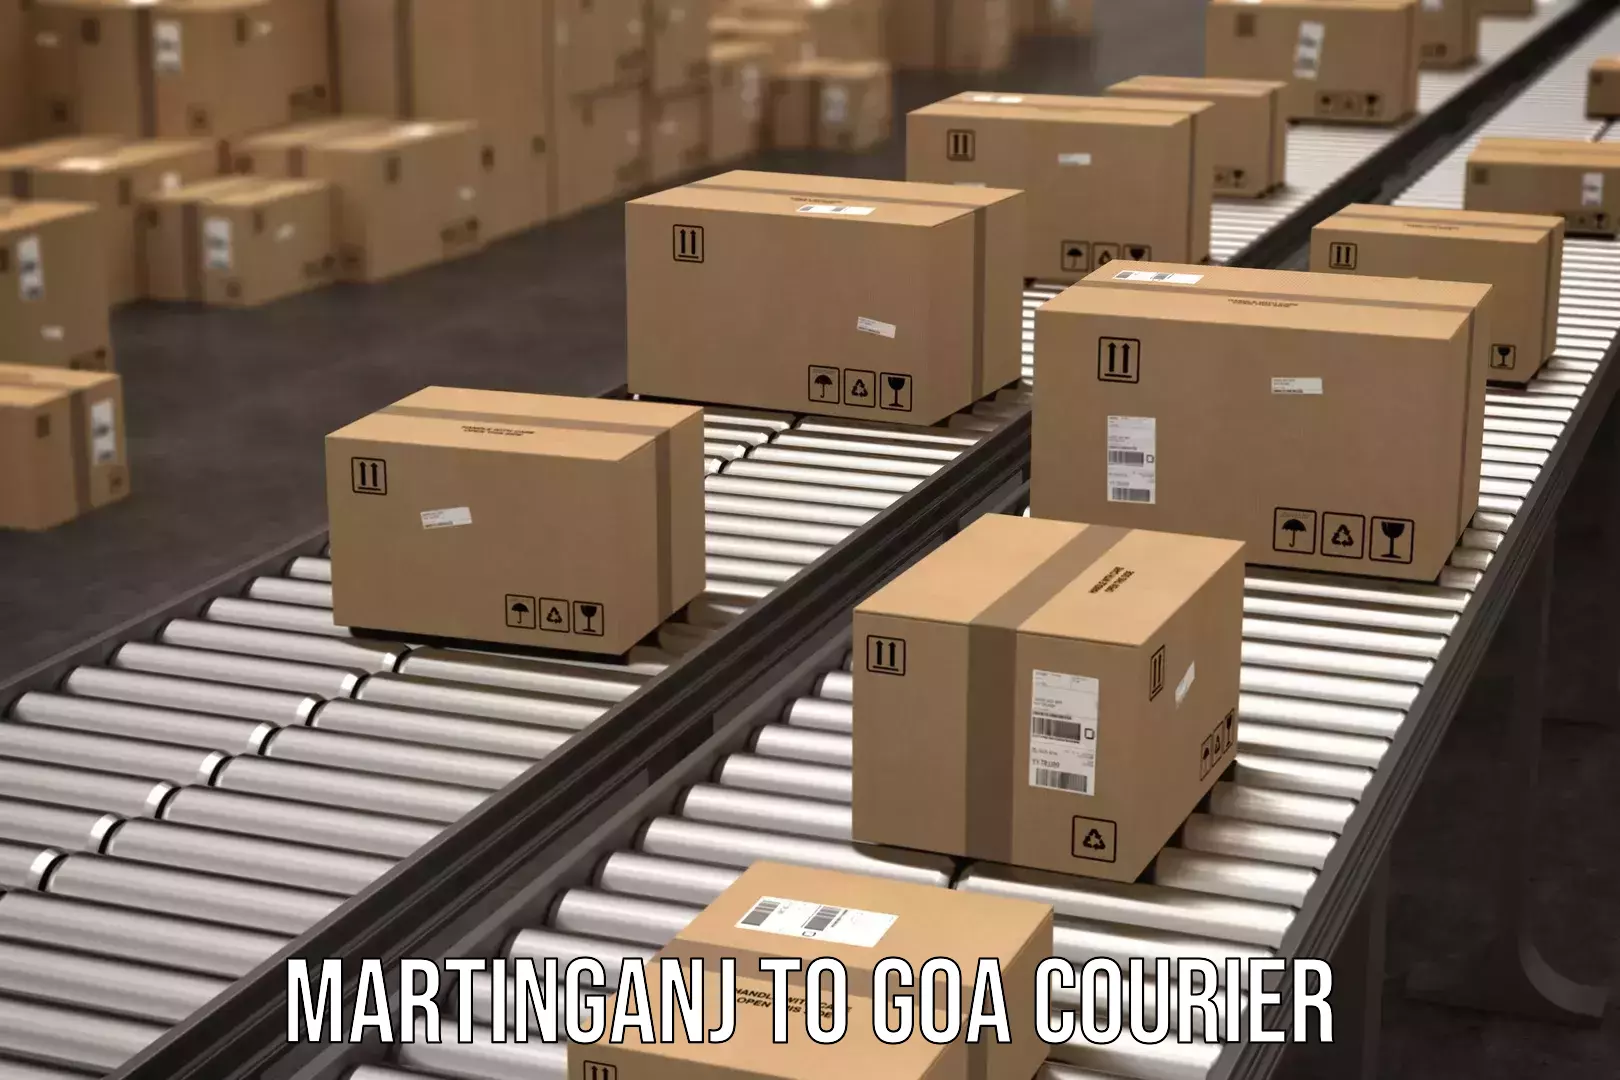 Return courier service Martinganj to South Goa